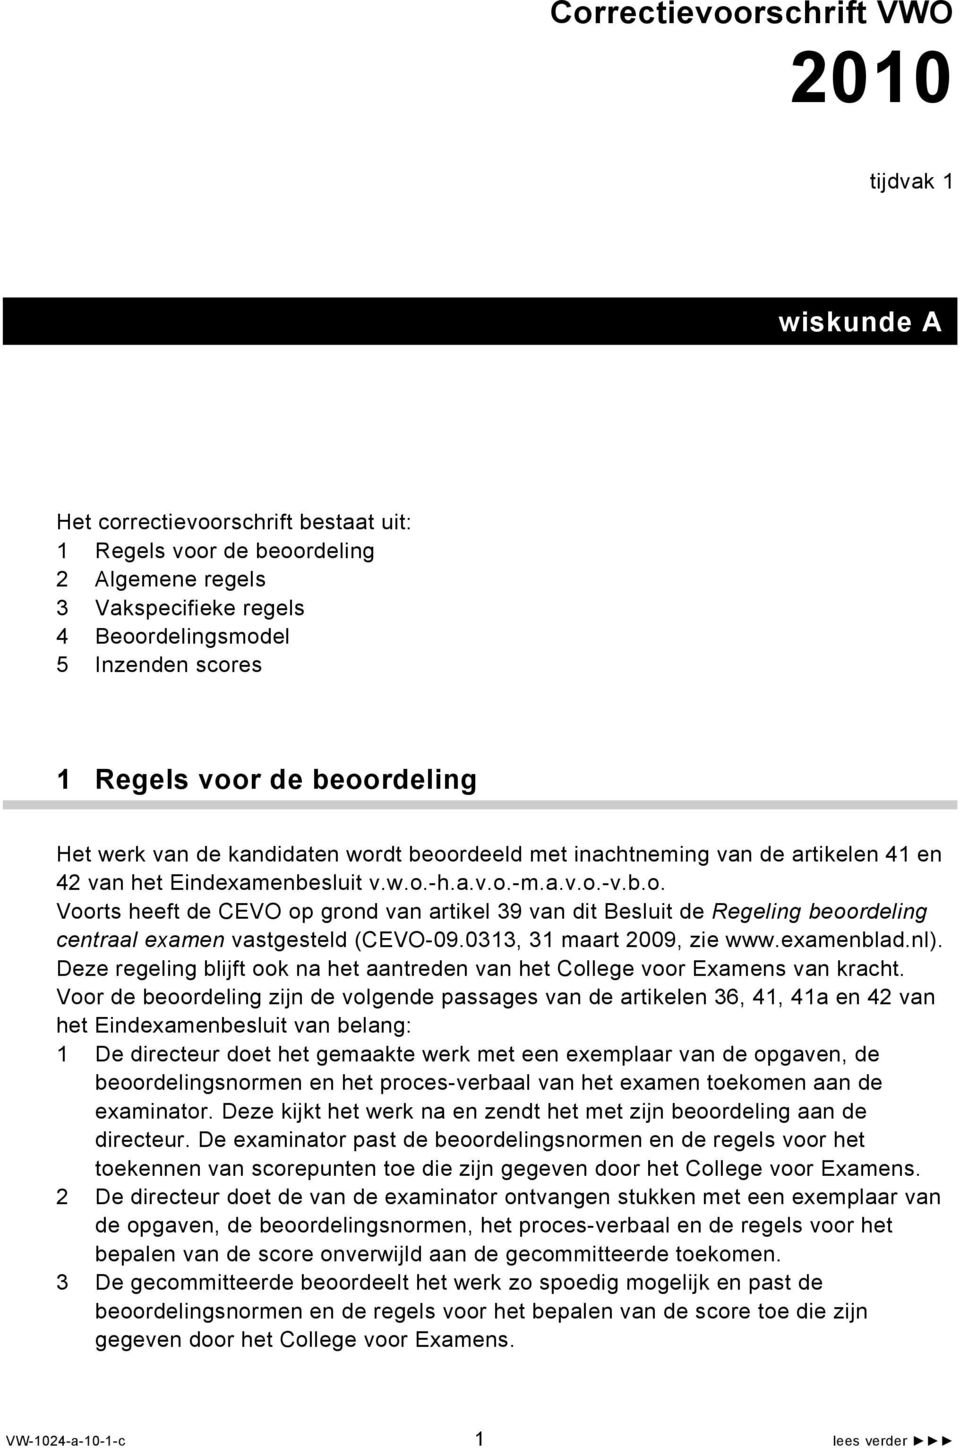 33, 3 maart 9, zie www.examenblad.nl). Deze regeling blijft ook na het aantreden van het College voor Examens van kracht.